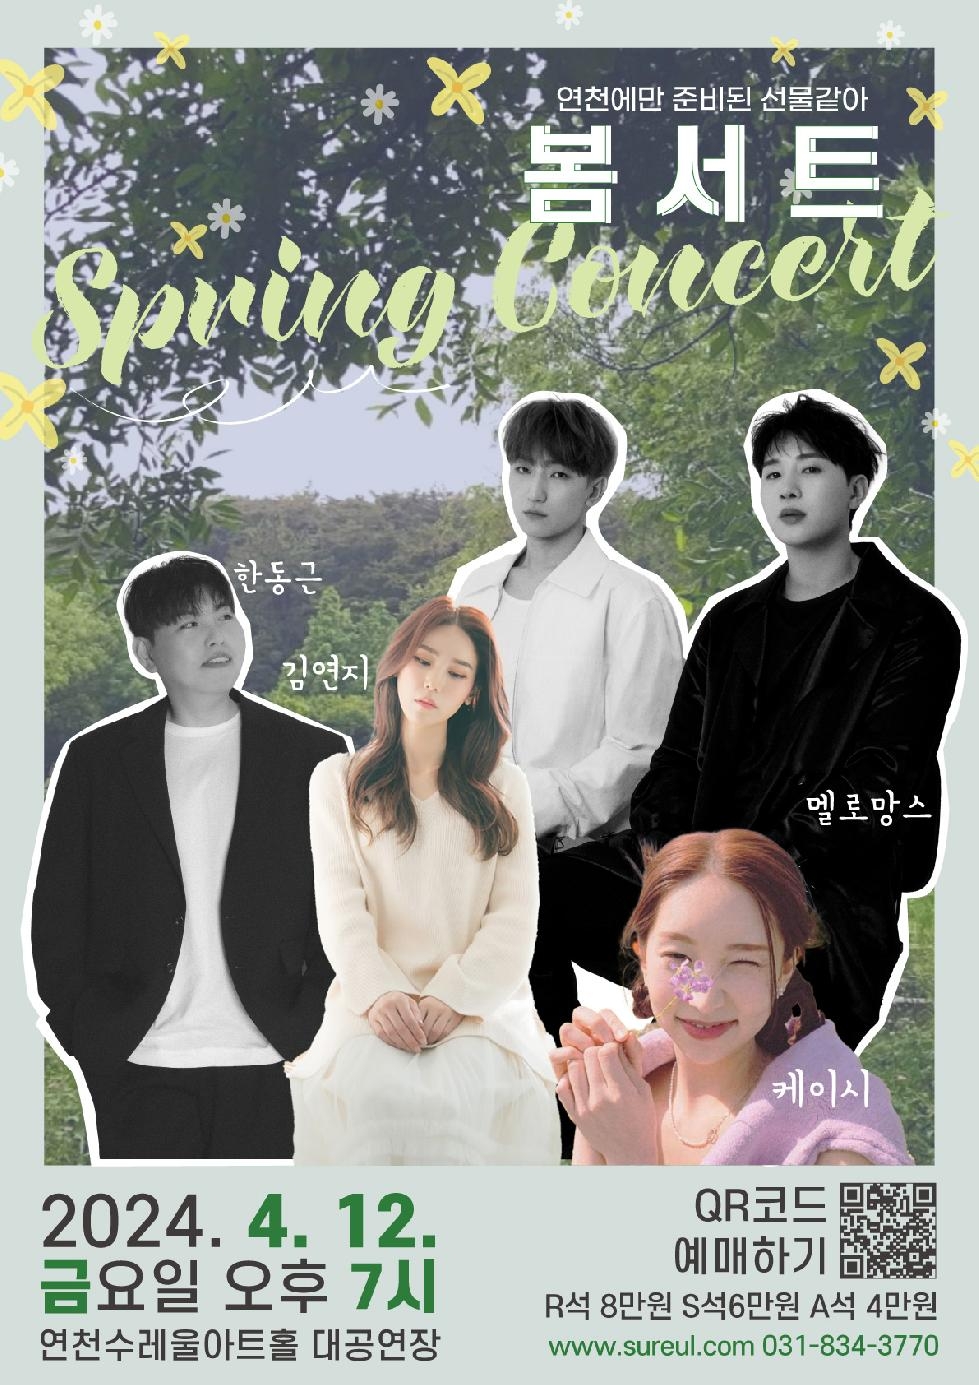 연천군에서만 볼 수 있는 최강 라이브 무대, 봄서트(Spring Concert) 개최